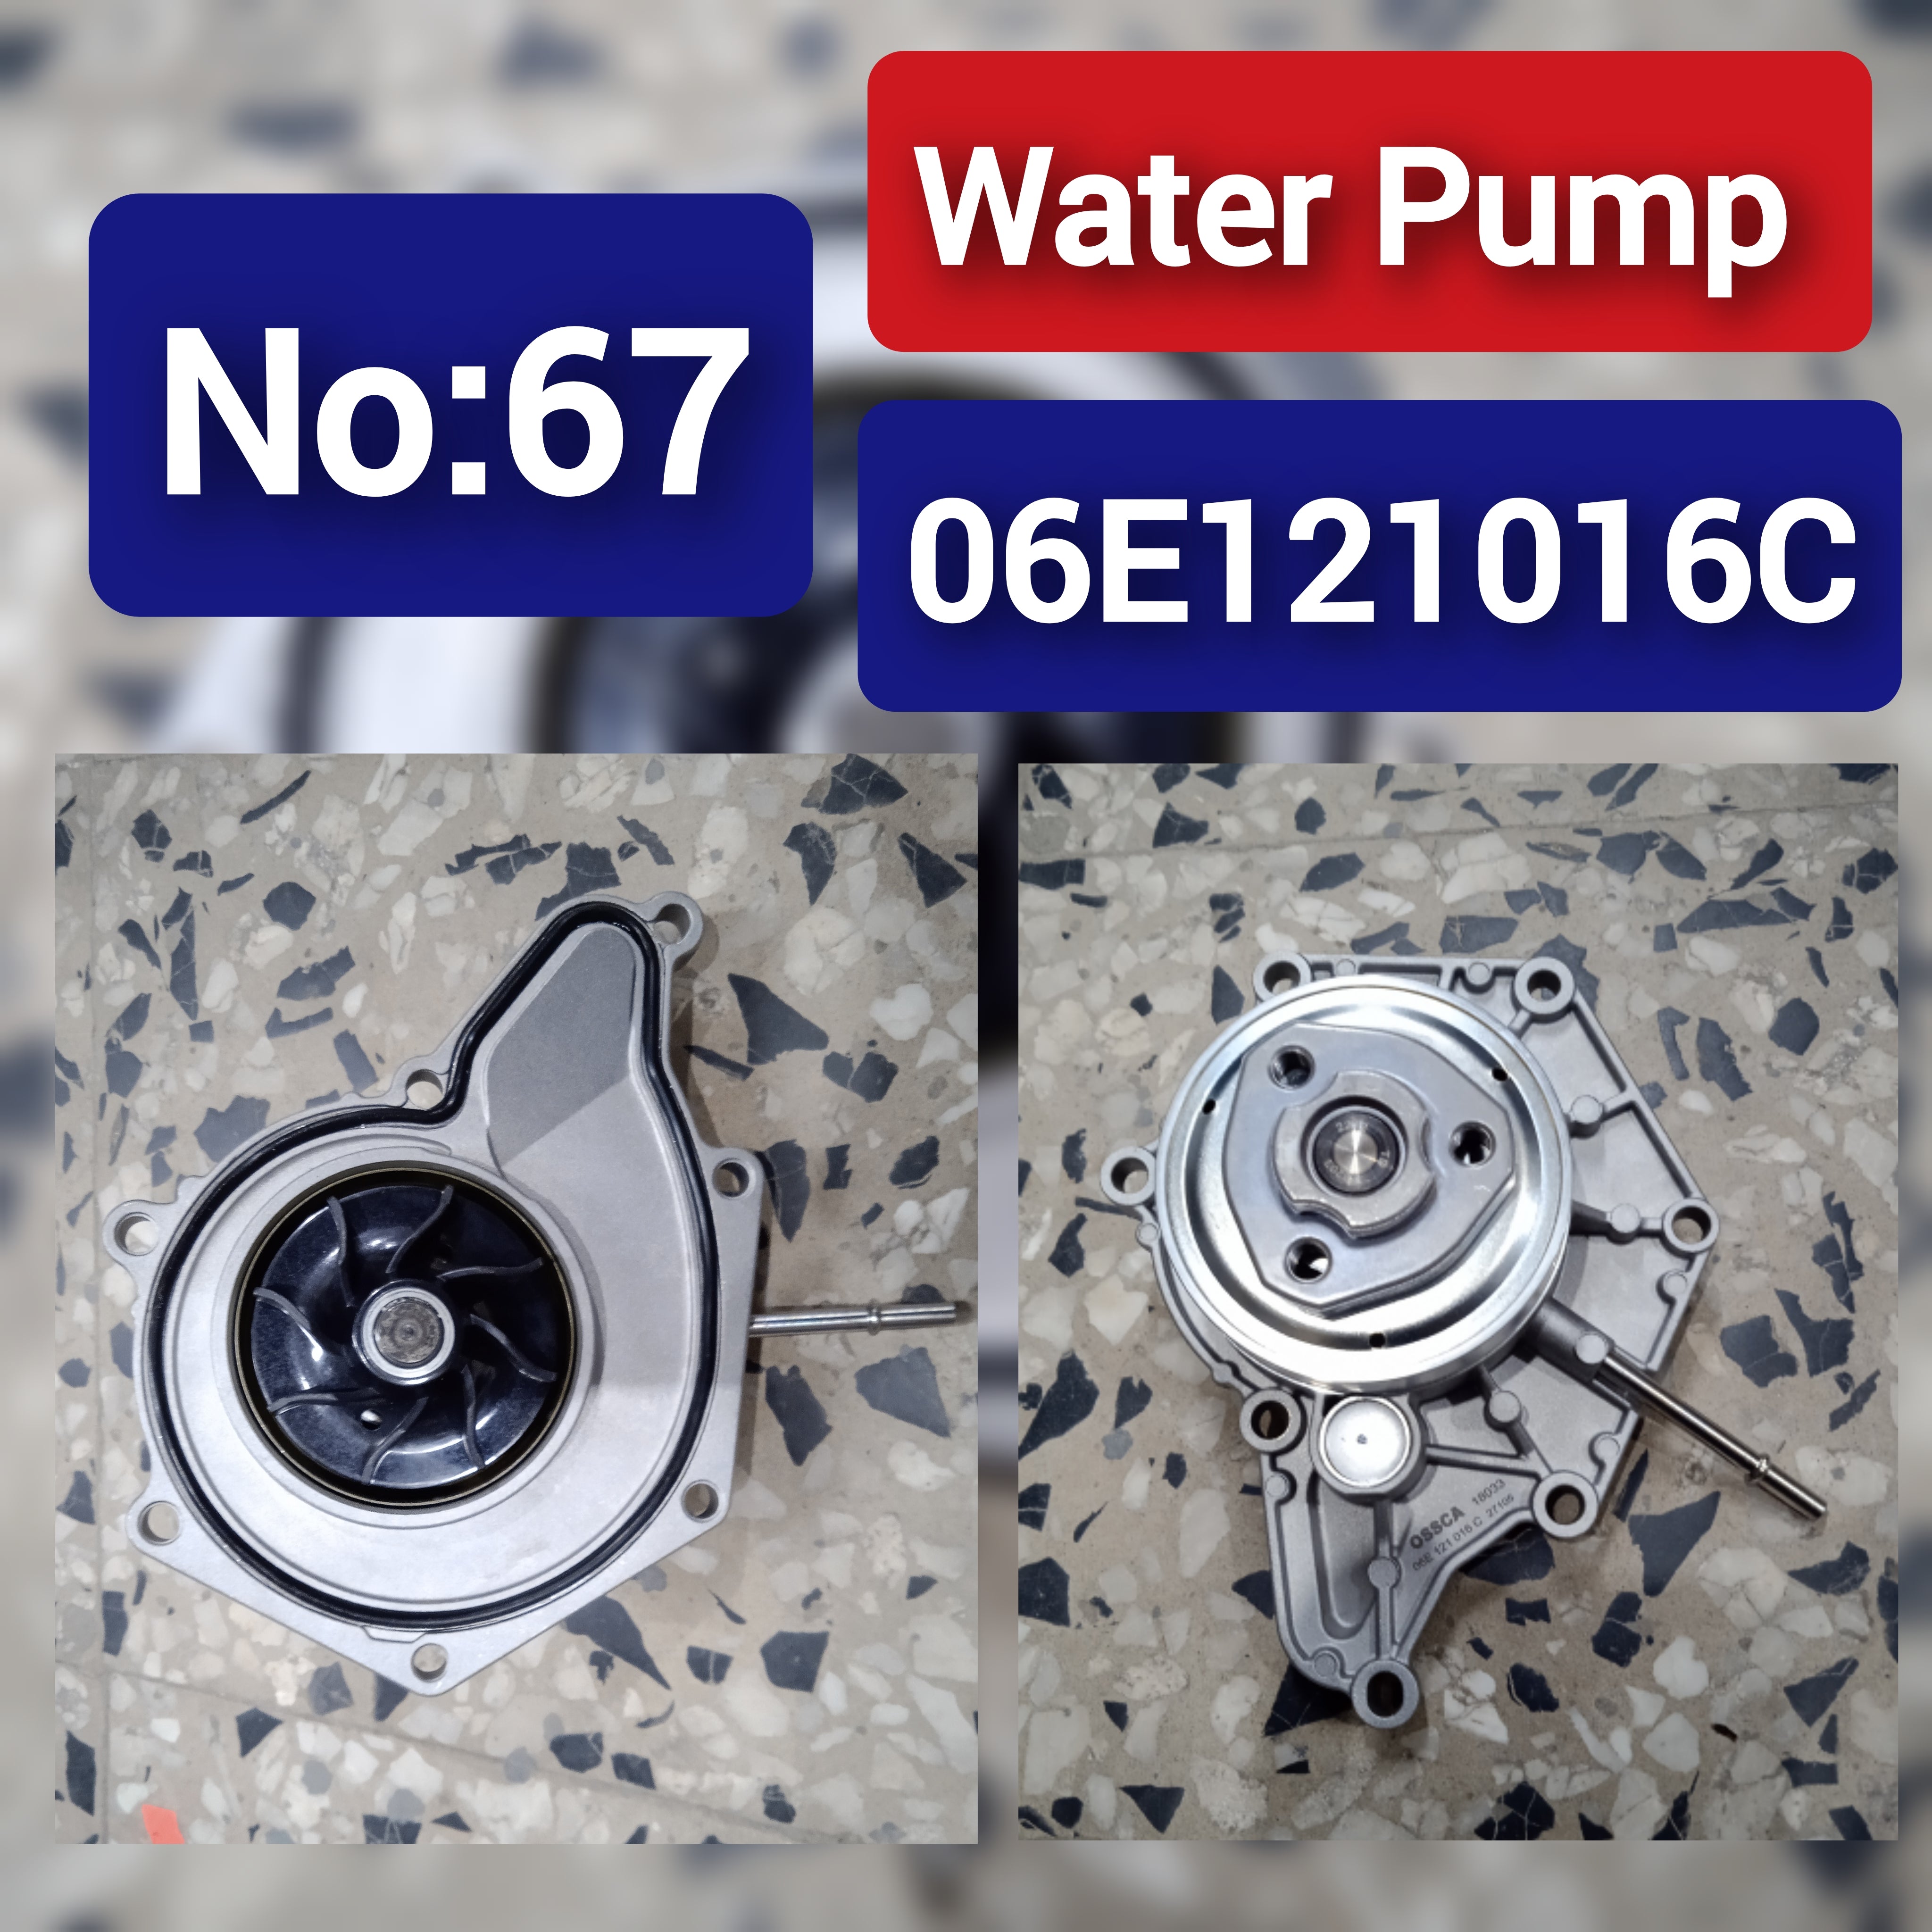 Water Pump 06E121016C For AUDI A4 A5 A6 A7 A8 Q5 Q7 Tag-W-67